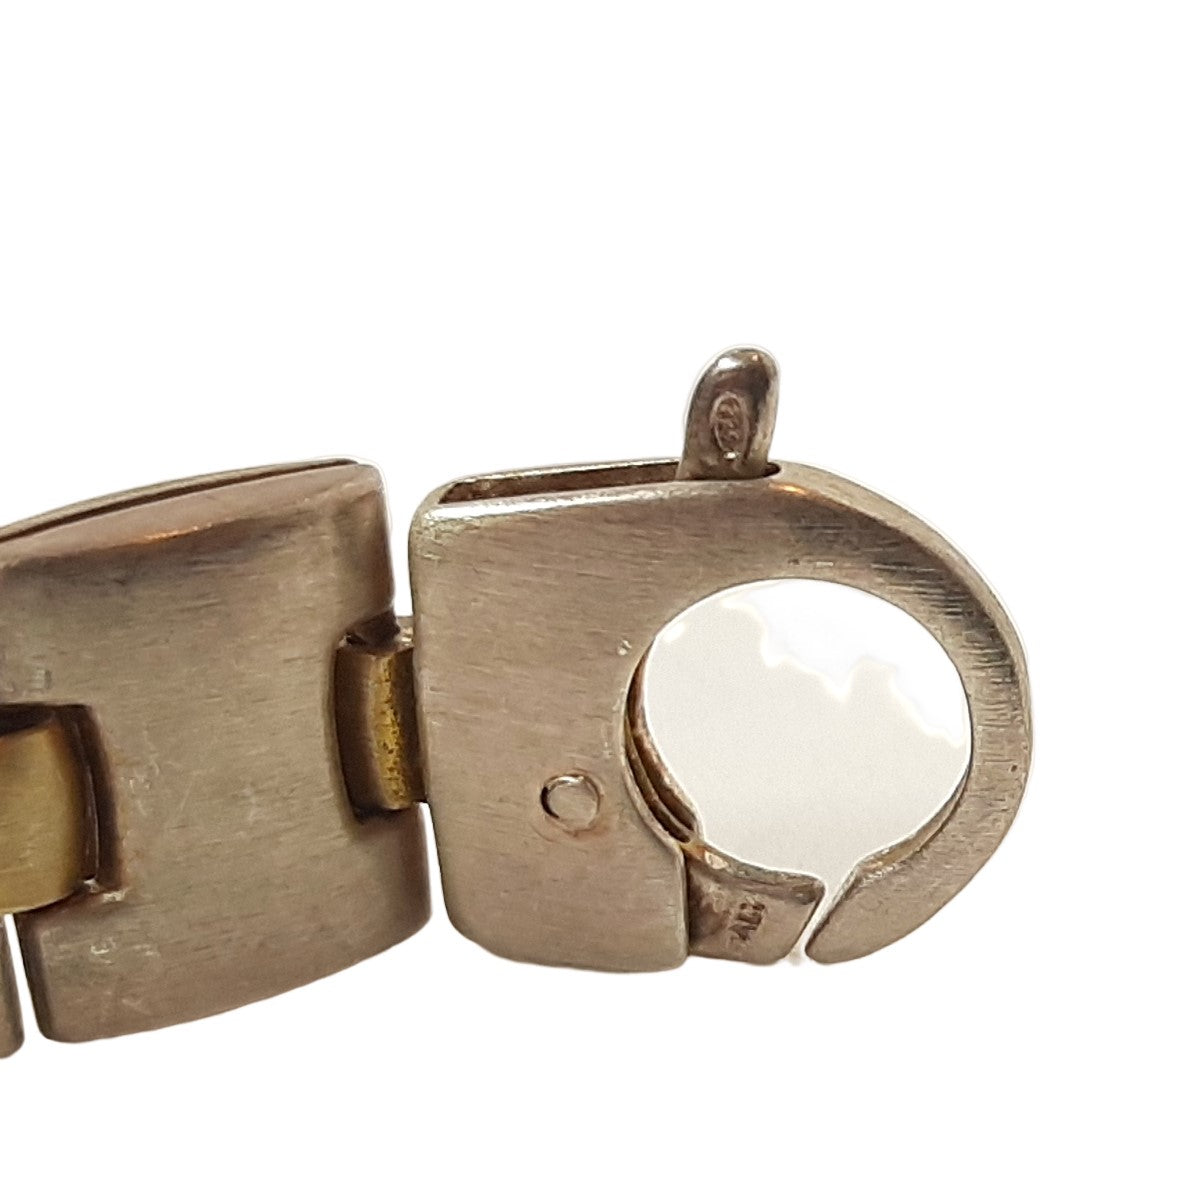 ヴィンテージ イタリアンシルバー925 リンクチェーン ブレスレット 23.6g / Vintage Italy Sterling Silver Link Chain Bracelet